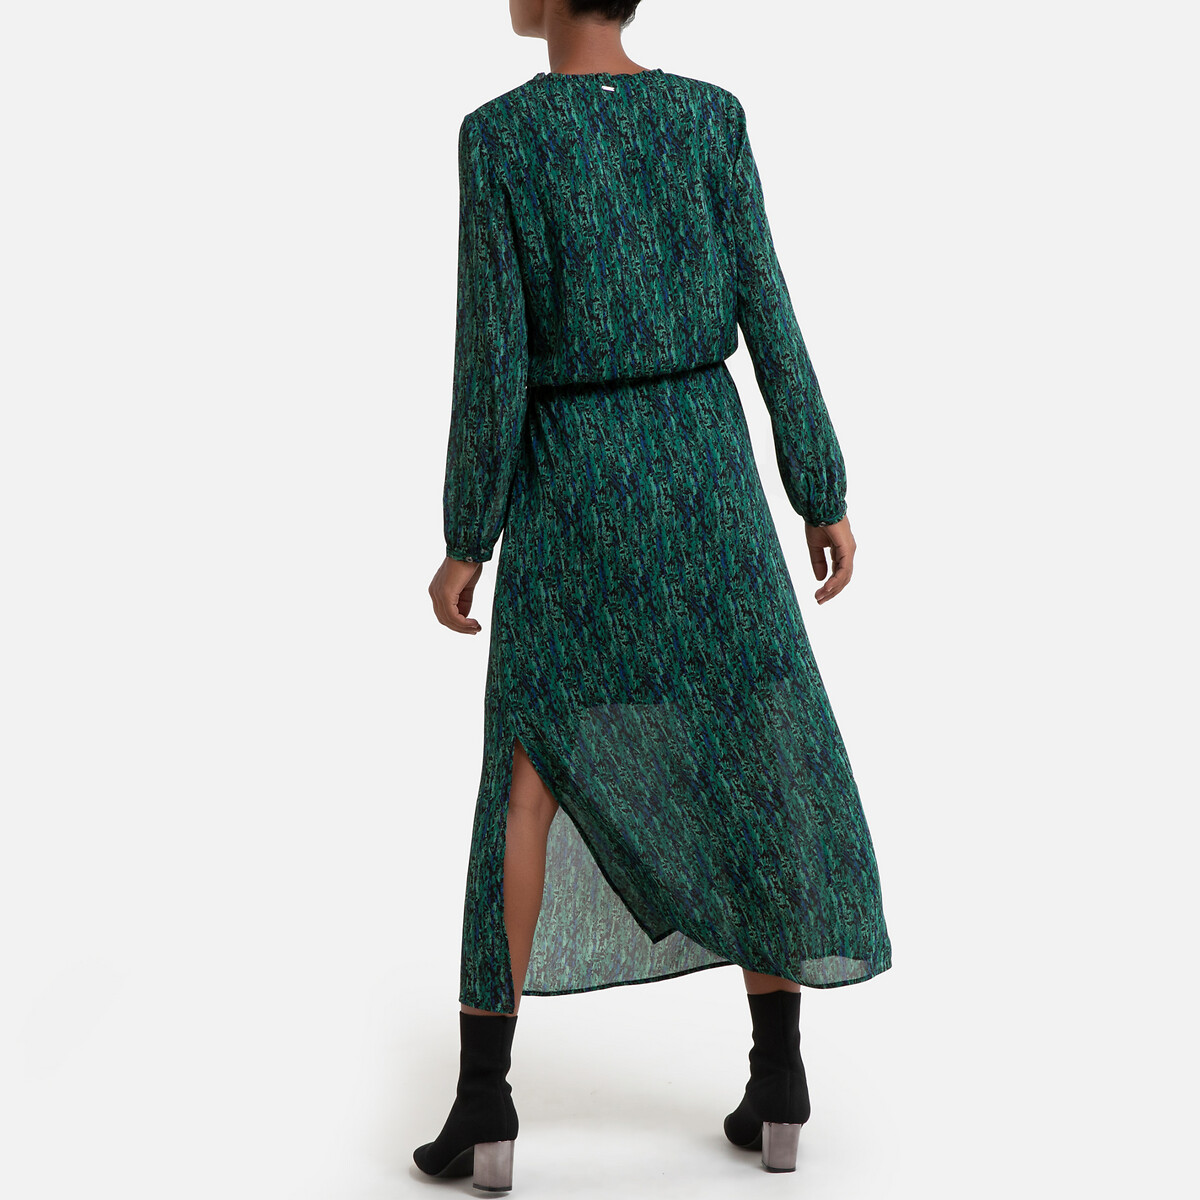 Платье La Redoute Из вуали с принтом длинное с длинными рукавами 40 (FR) - 46 (RUS) зеленый, размер 40 (FR) - 46 (RUS) Из вуали с принтом длинное с длинными рукавами 40 (FR) - 46 (RUS) зеленый - фото 3